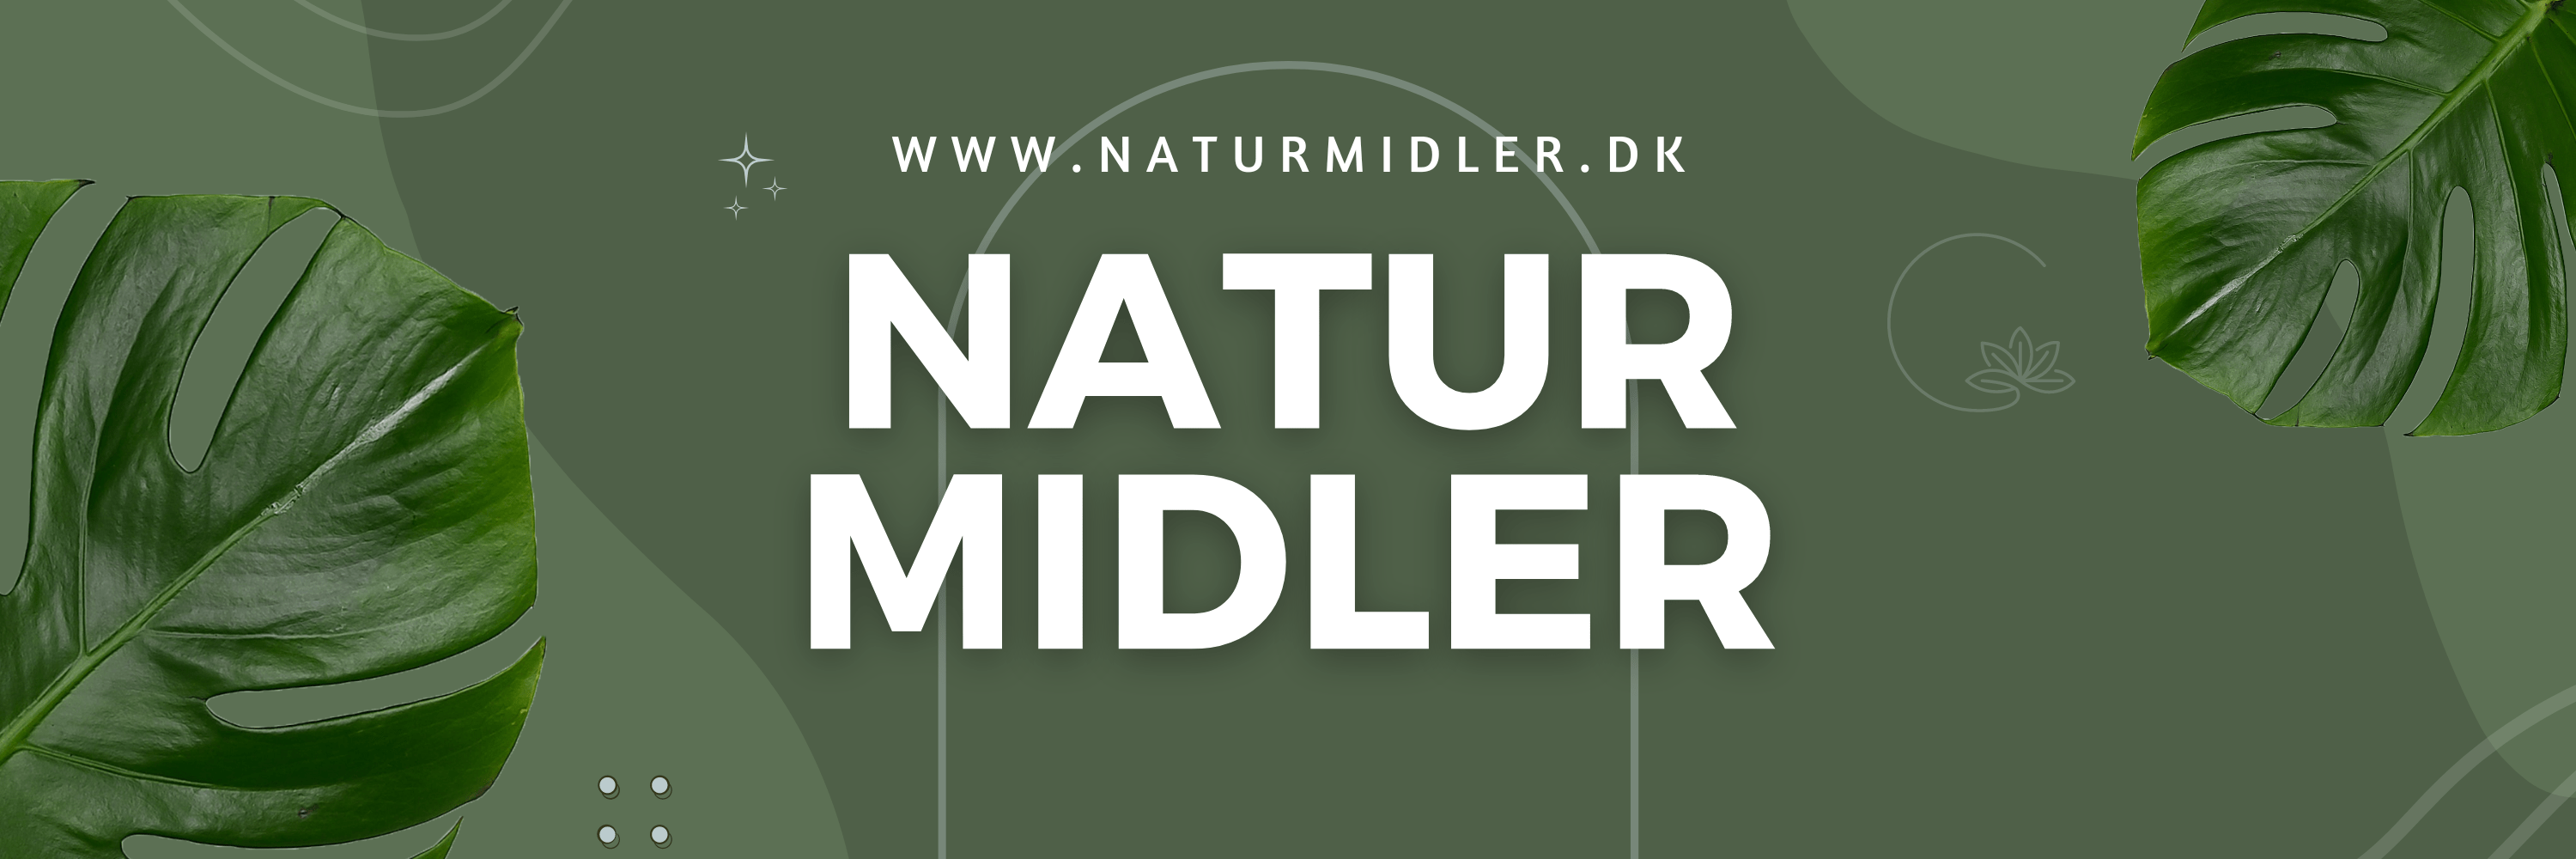 naturmidler logo